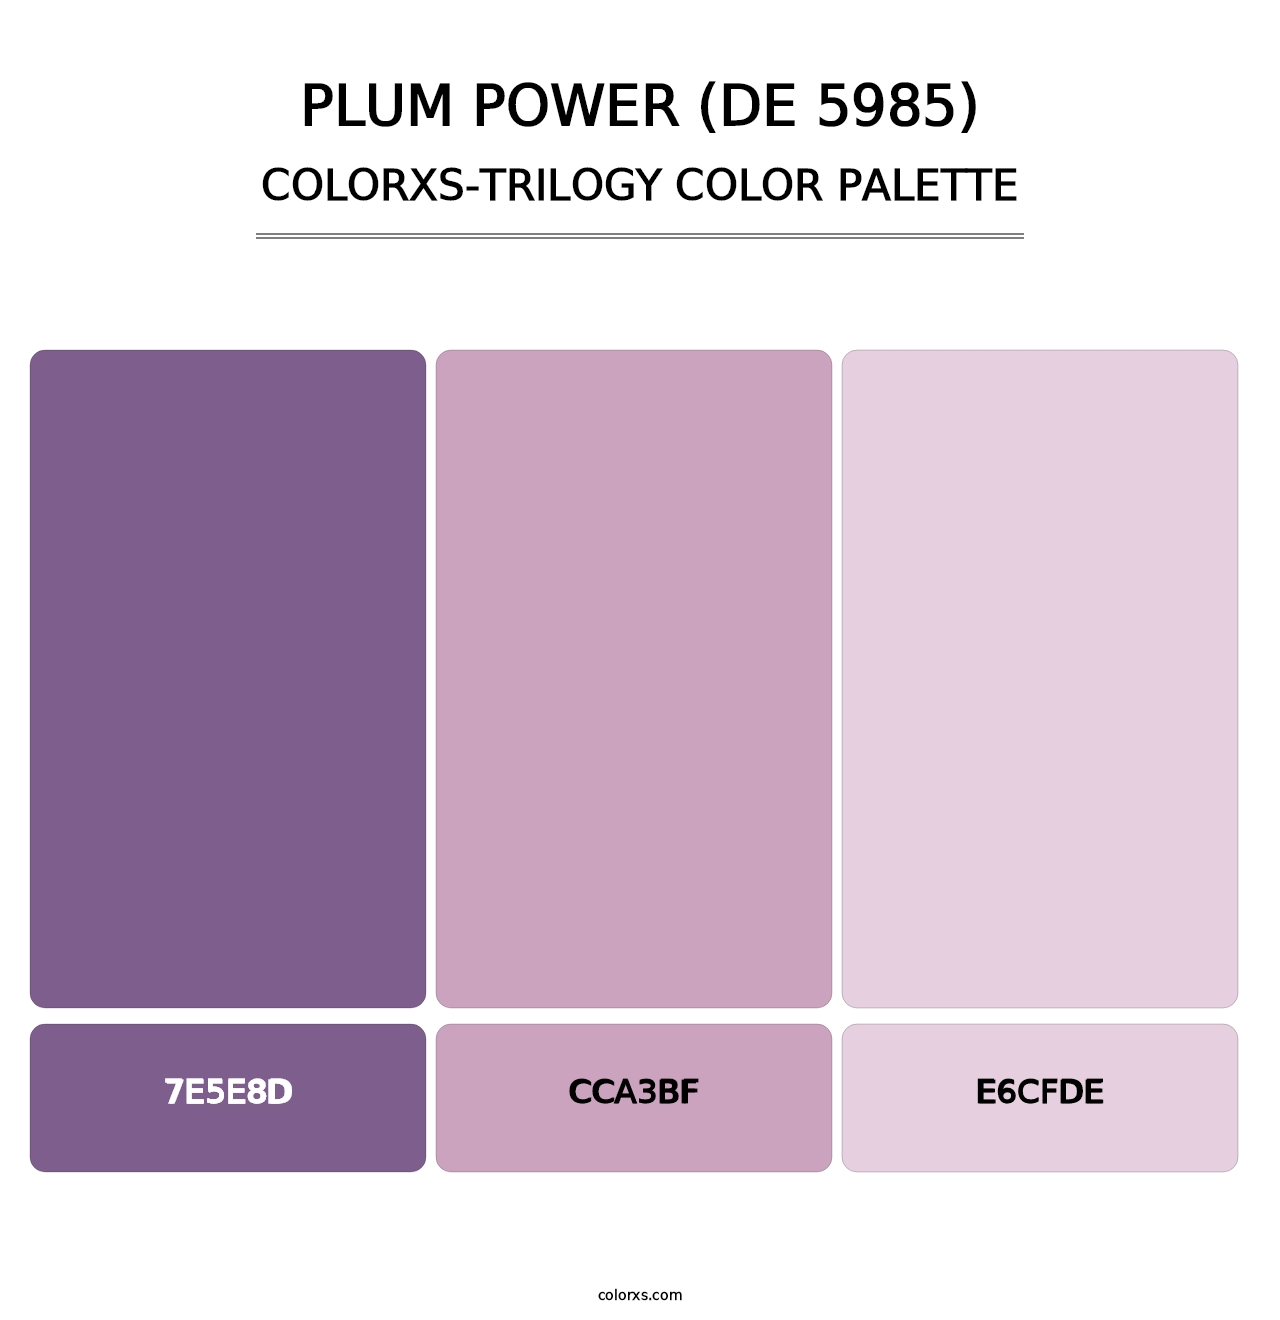 Plum Power (DE 5985) - Colorxs Trilogy Palette